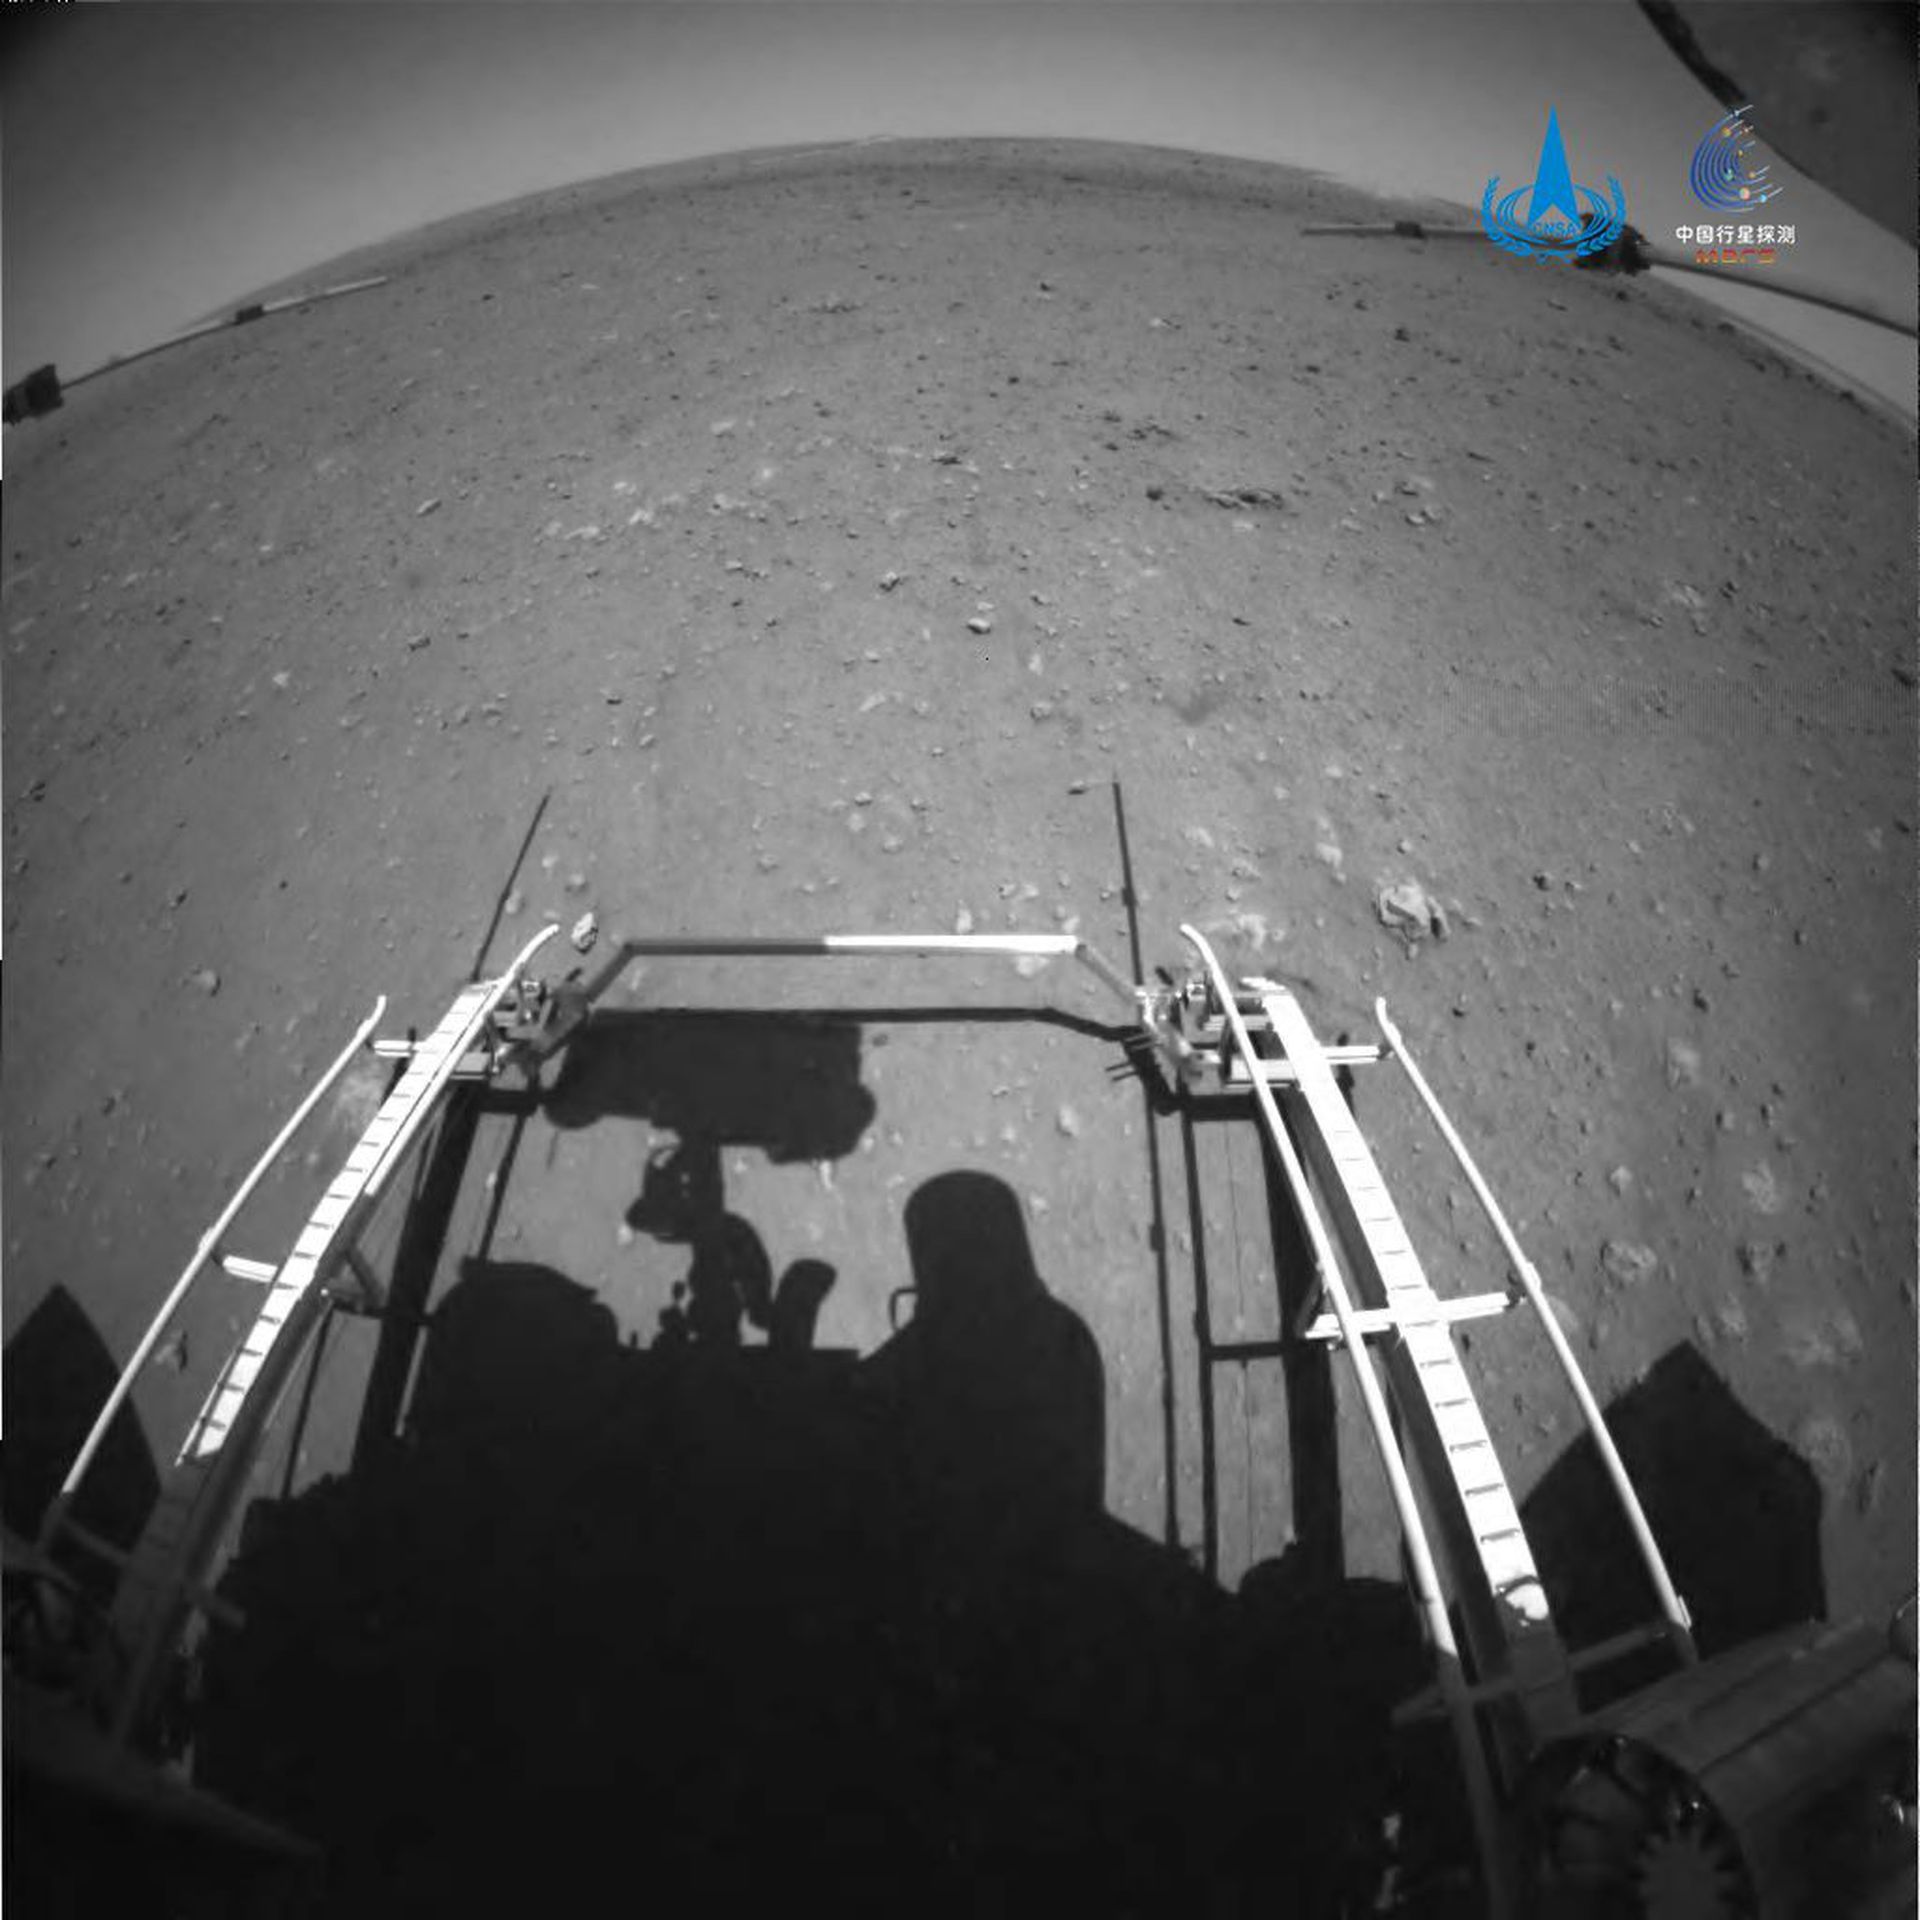 5月22日10时40分，祝融号火星车已安全驶离着陆平台，到达火星表面，开始巡视探测。这是由前避障相机拍摄的图片。（中国国家航天局）